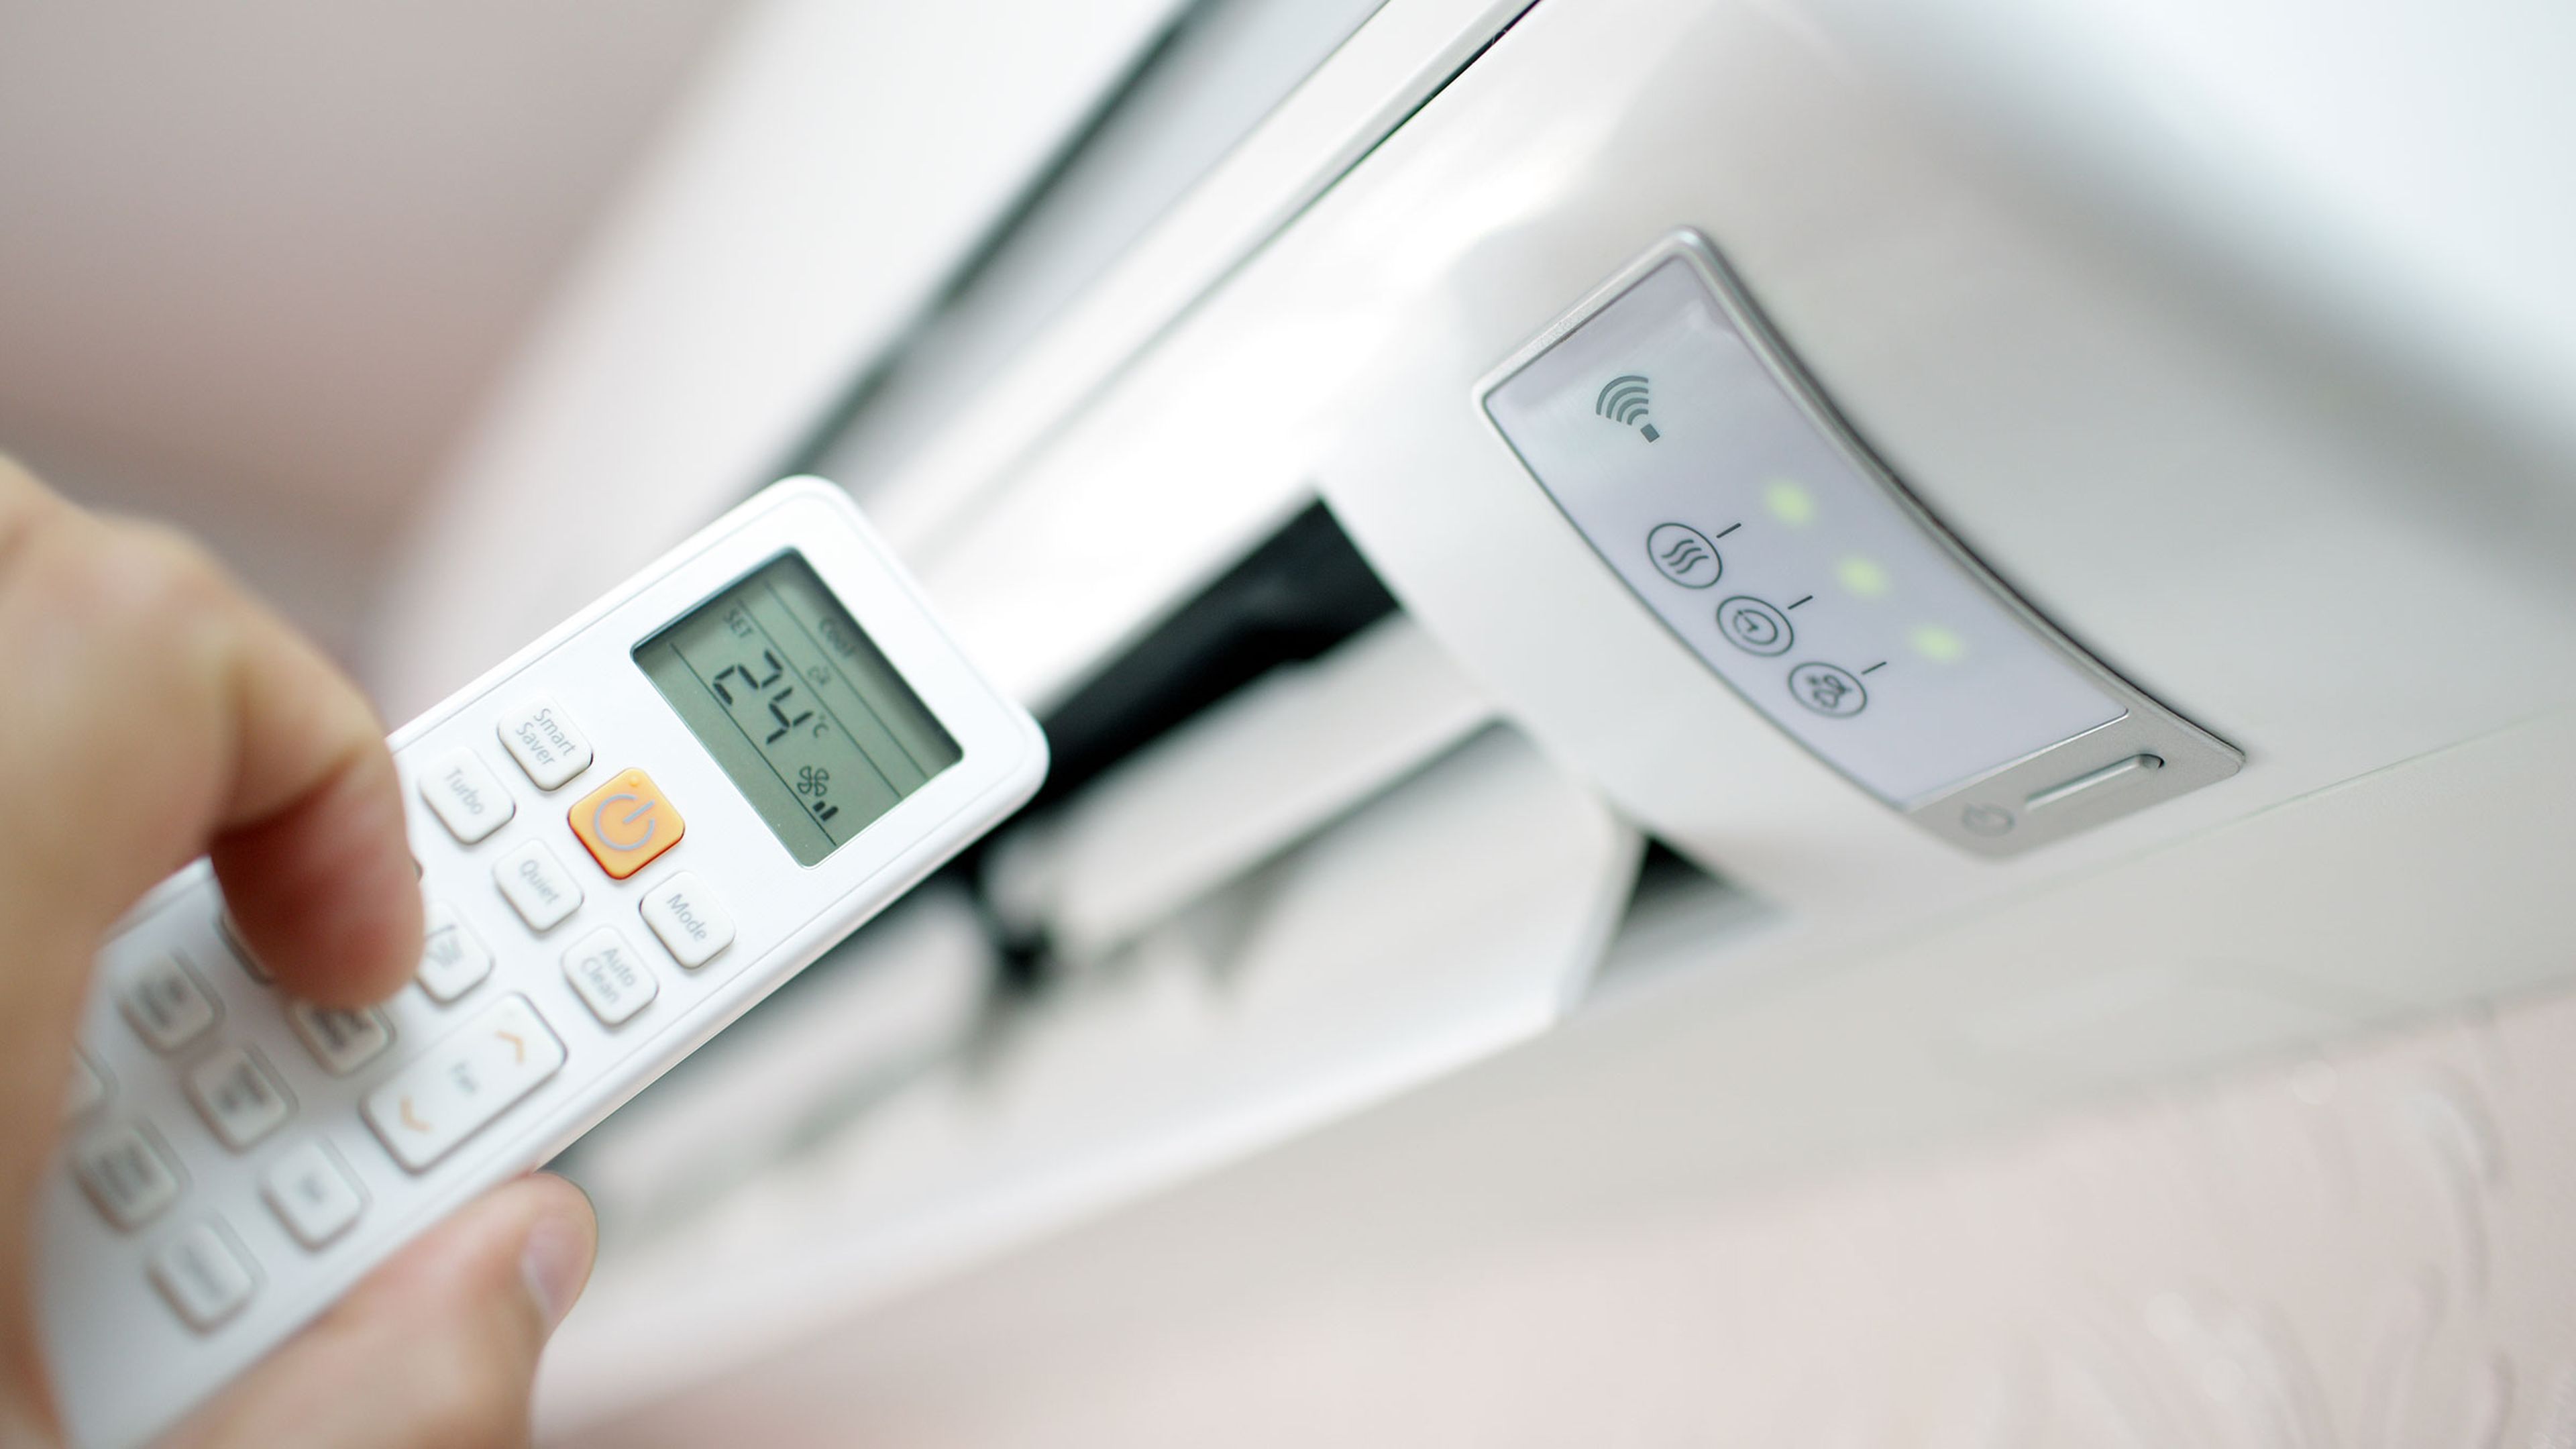 Cuánto cuesta enfriar habitación con un aparato de aire acondicionado? Computer Hoy